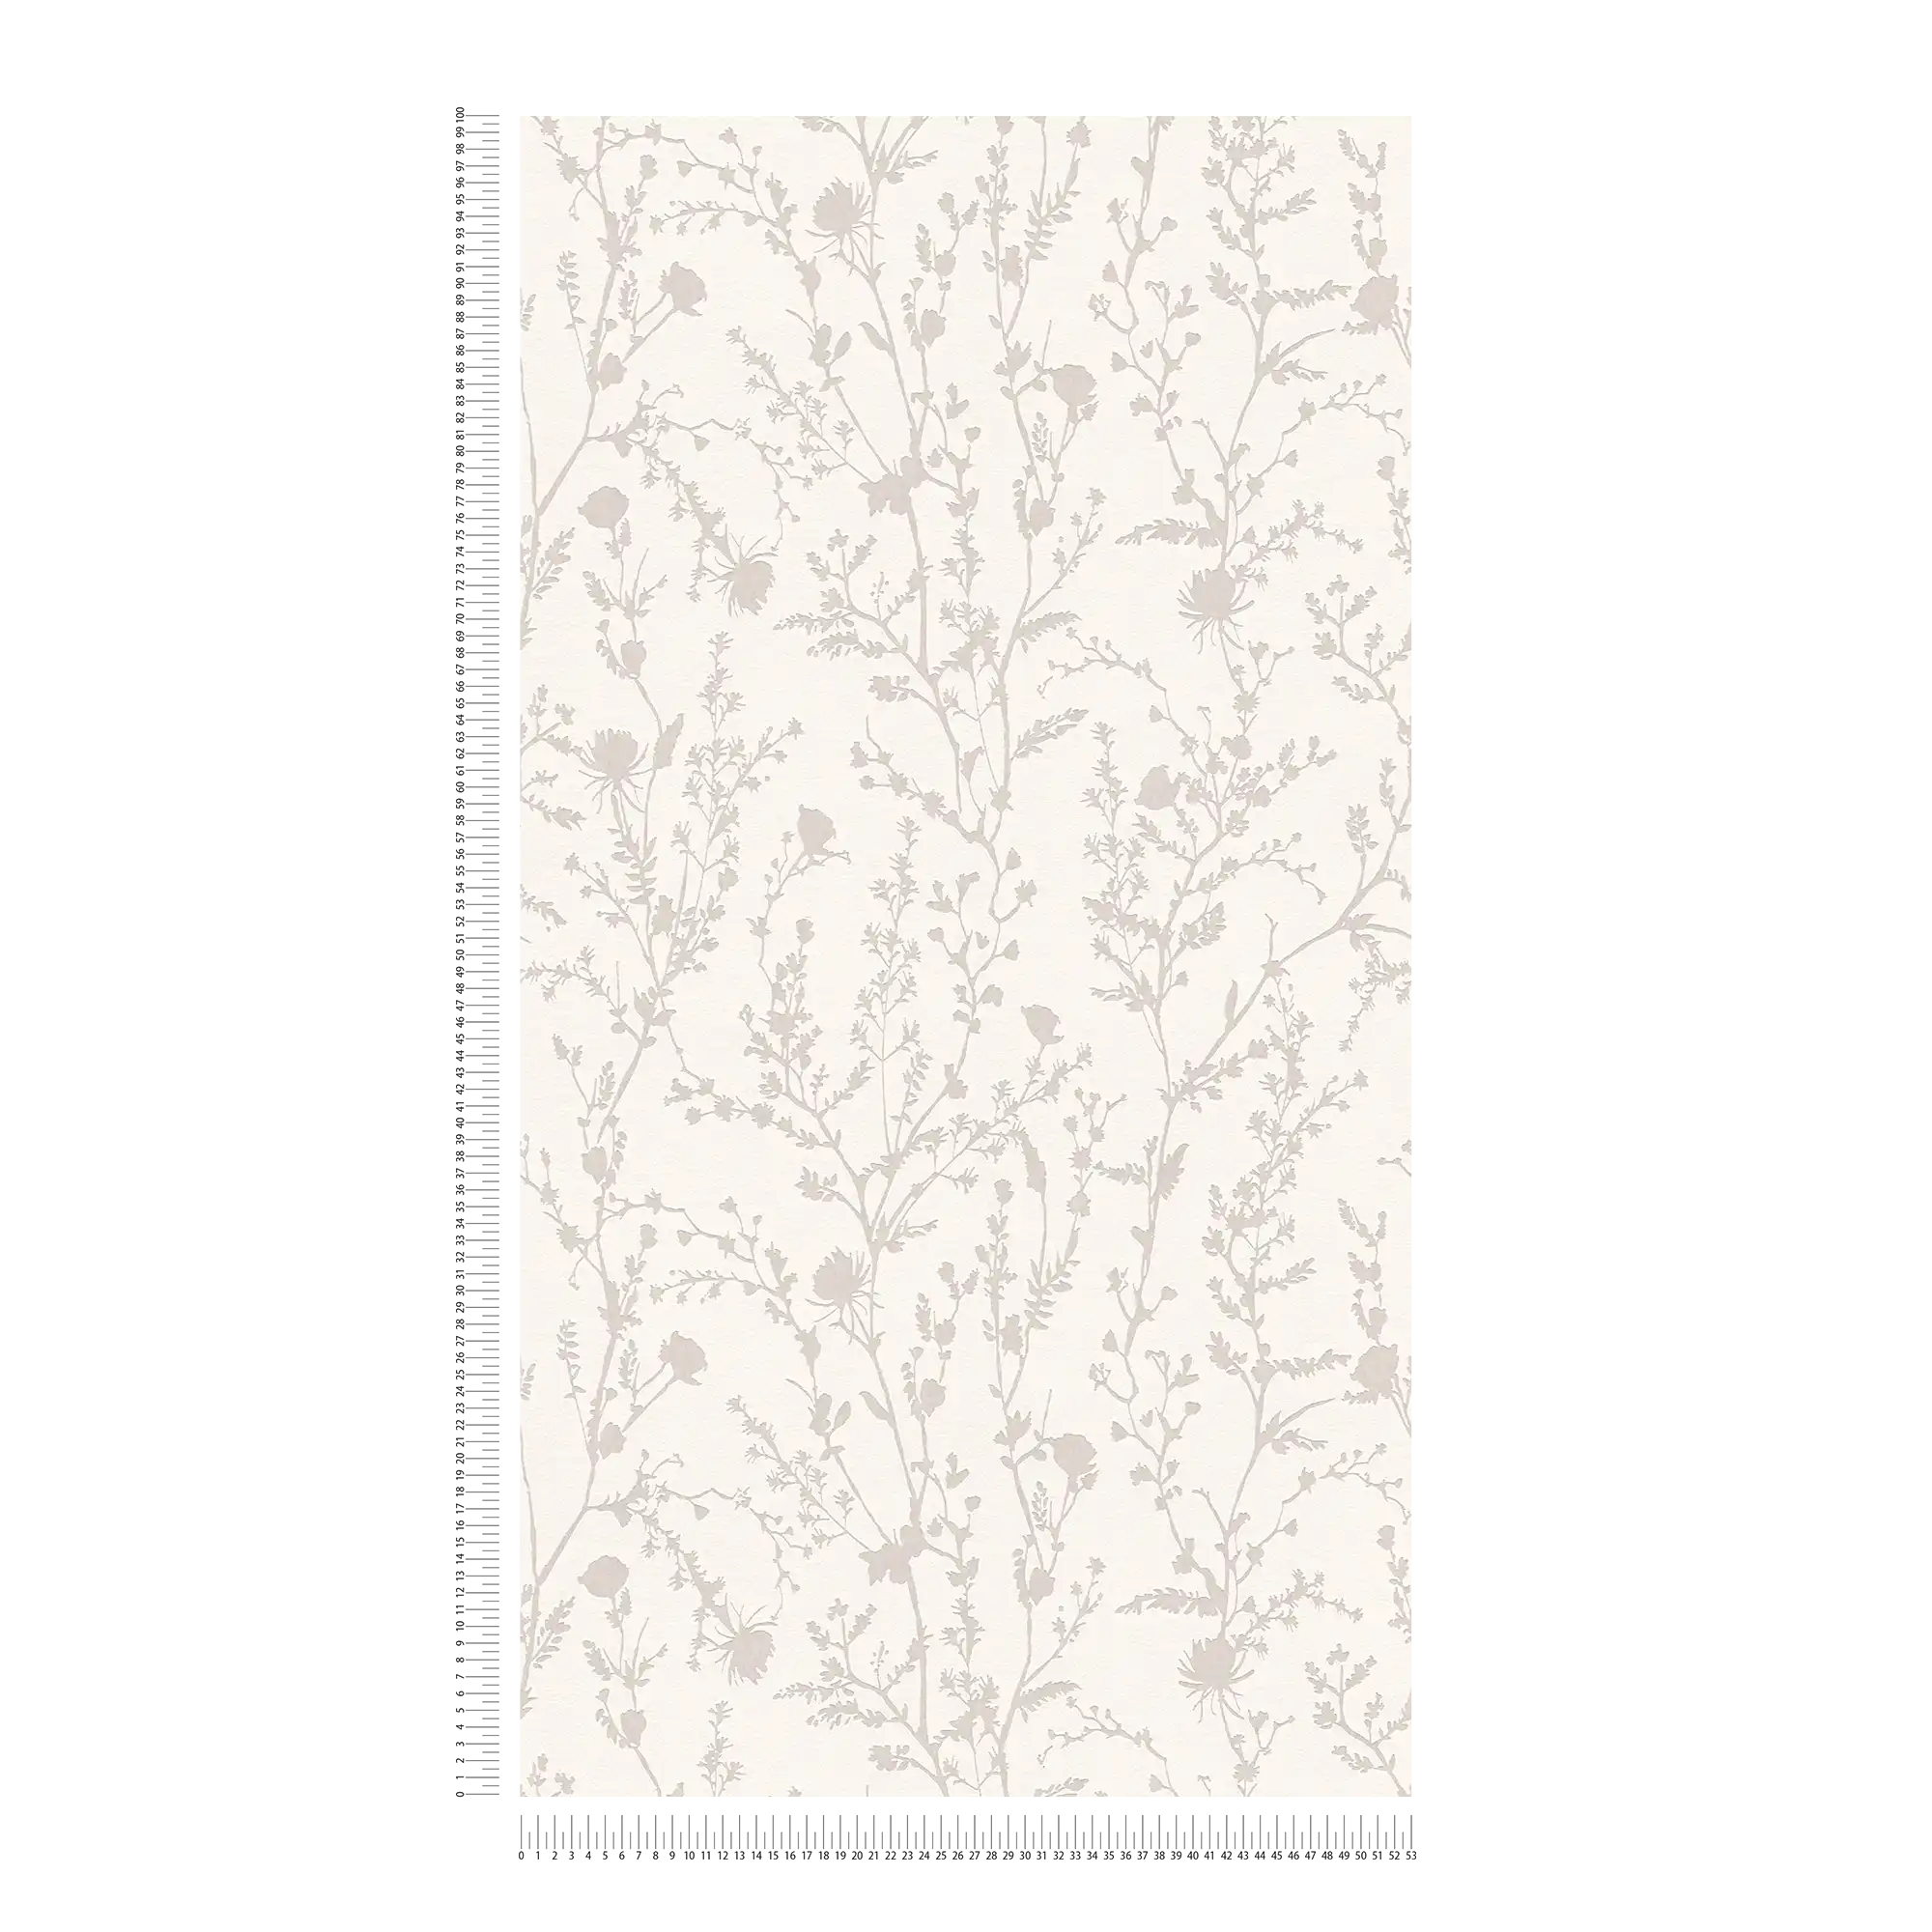             Papel pintado no tejido con motivos florales y gramíneas - blanco, gris
        